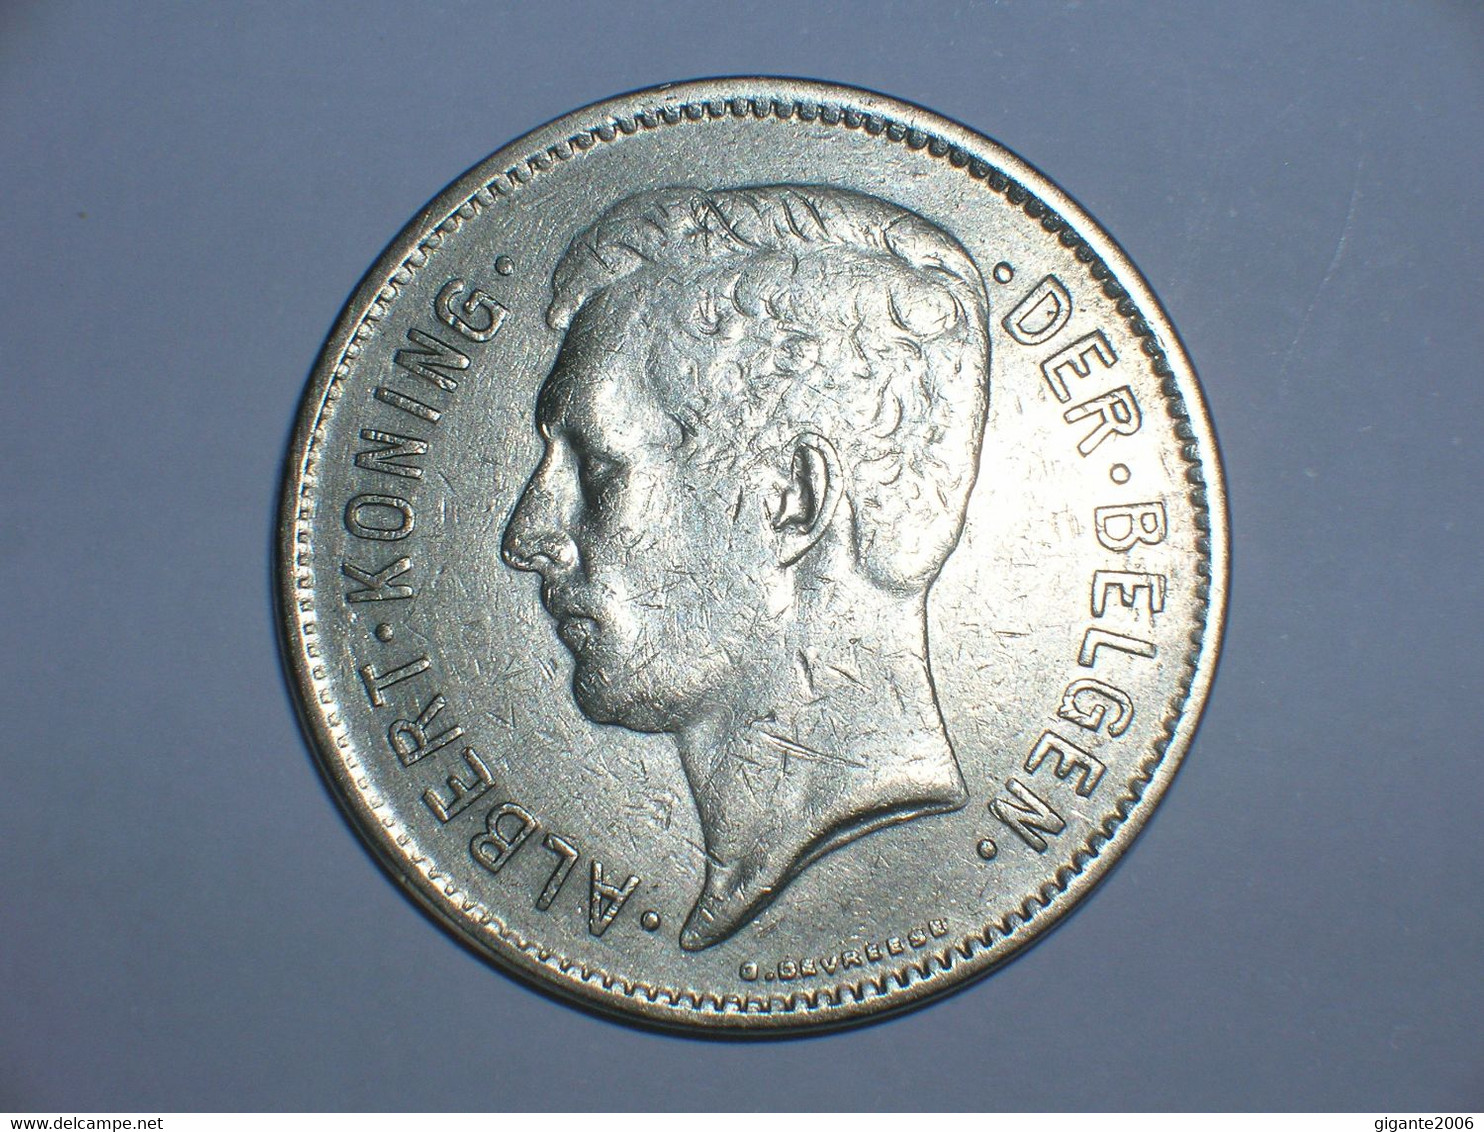 BELGICA 5 FRANCOS 1931, BELGIE (44) - 5 Francs & 1 Belga